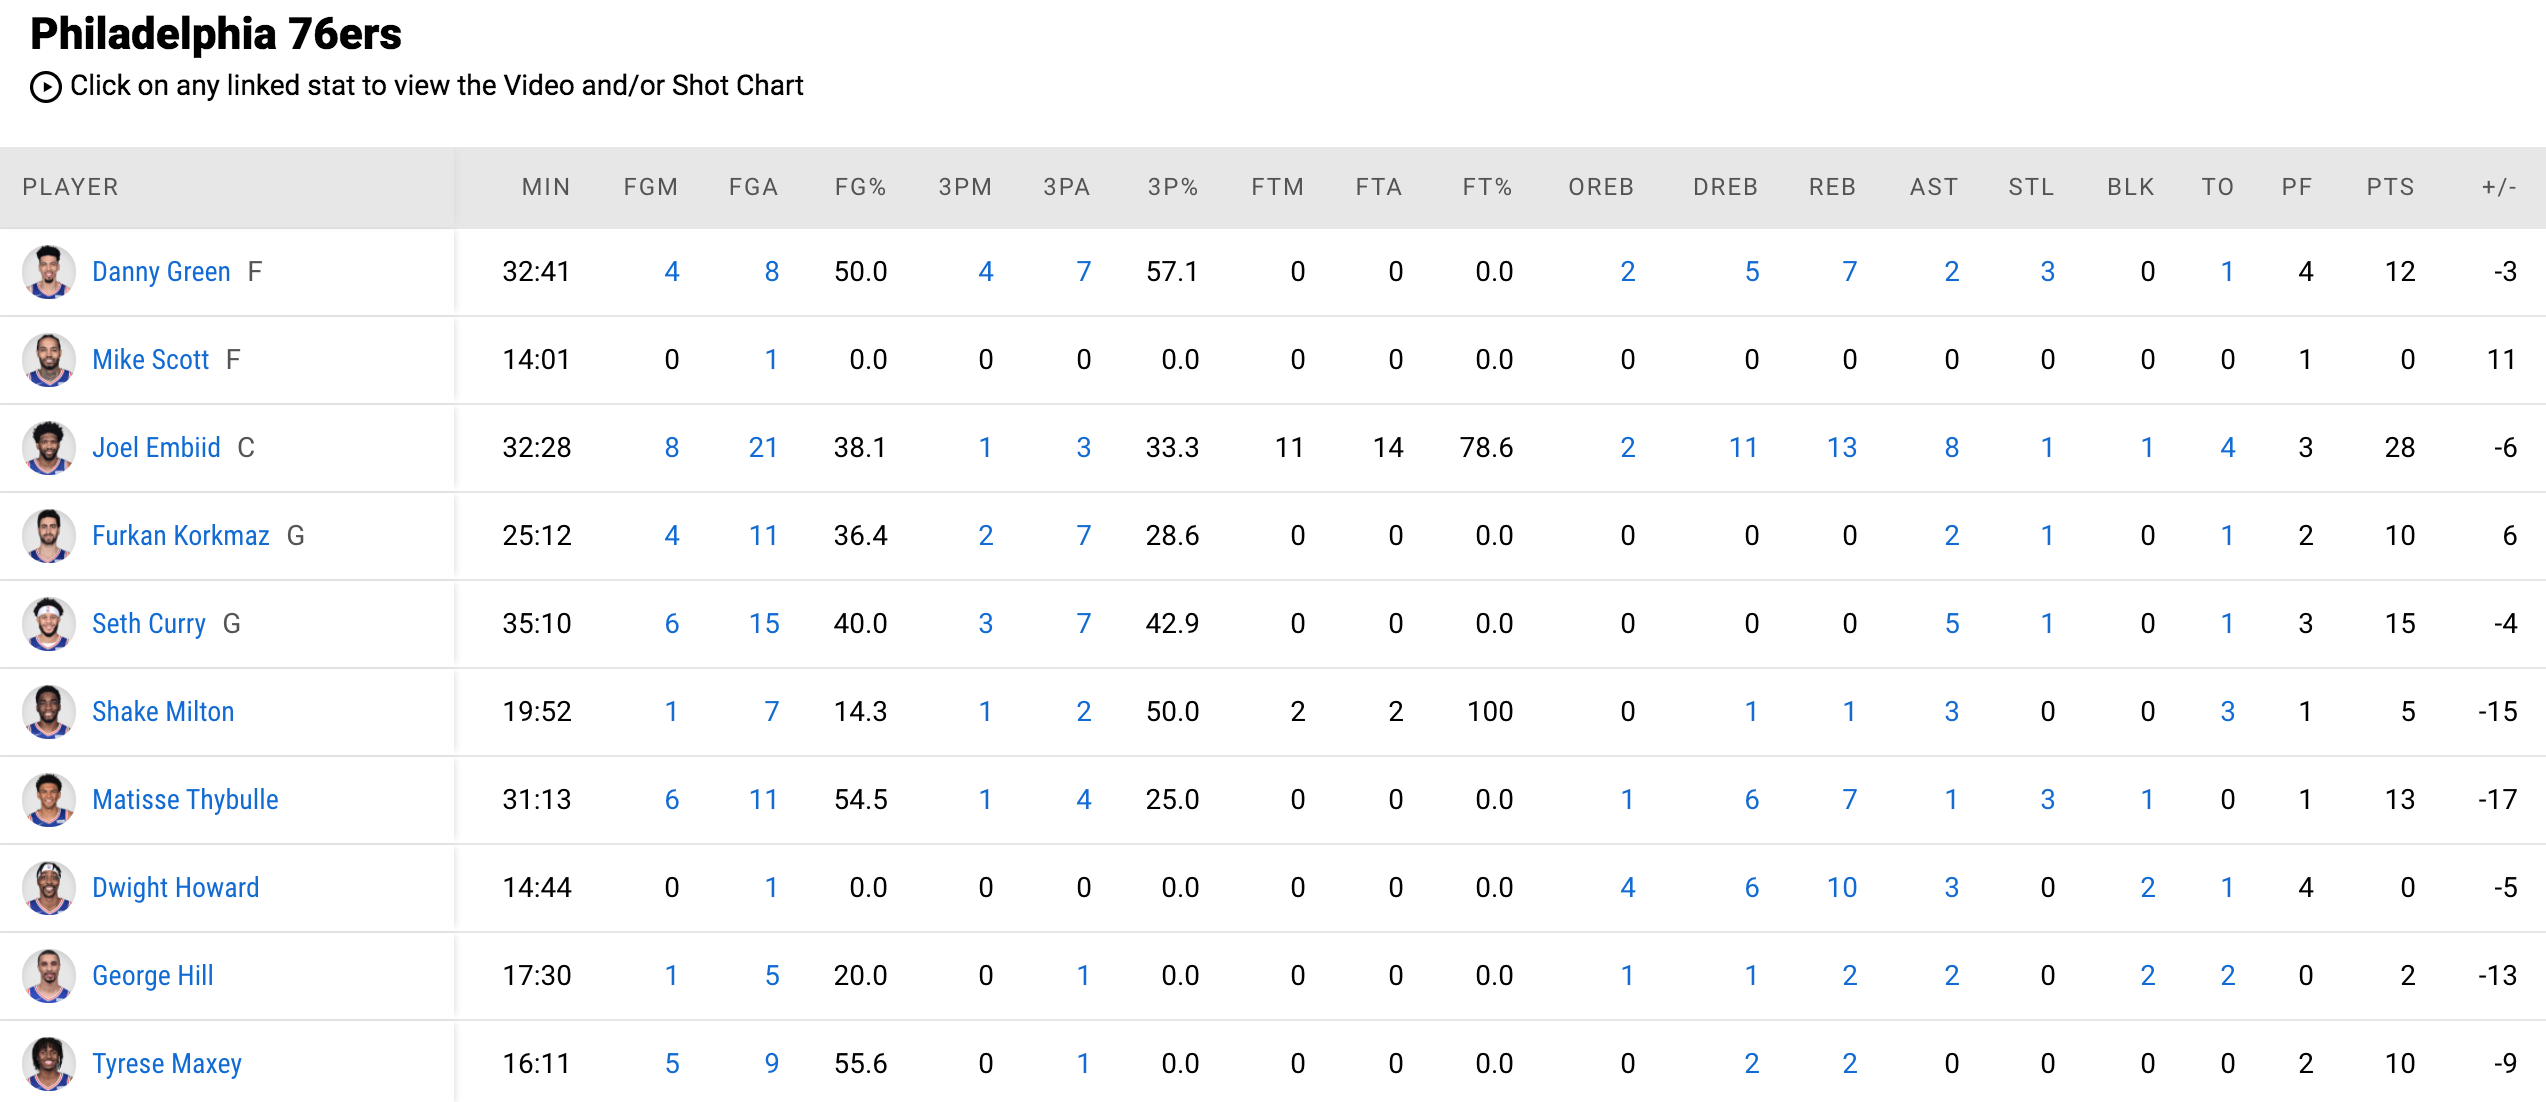 Vượt qua huyền thoại Kobe Bryant, Stephen Curry tạo nên điều kỳ diệu trước Philadelphia 76ers - Ảnh 5.